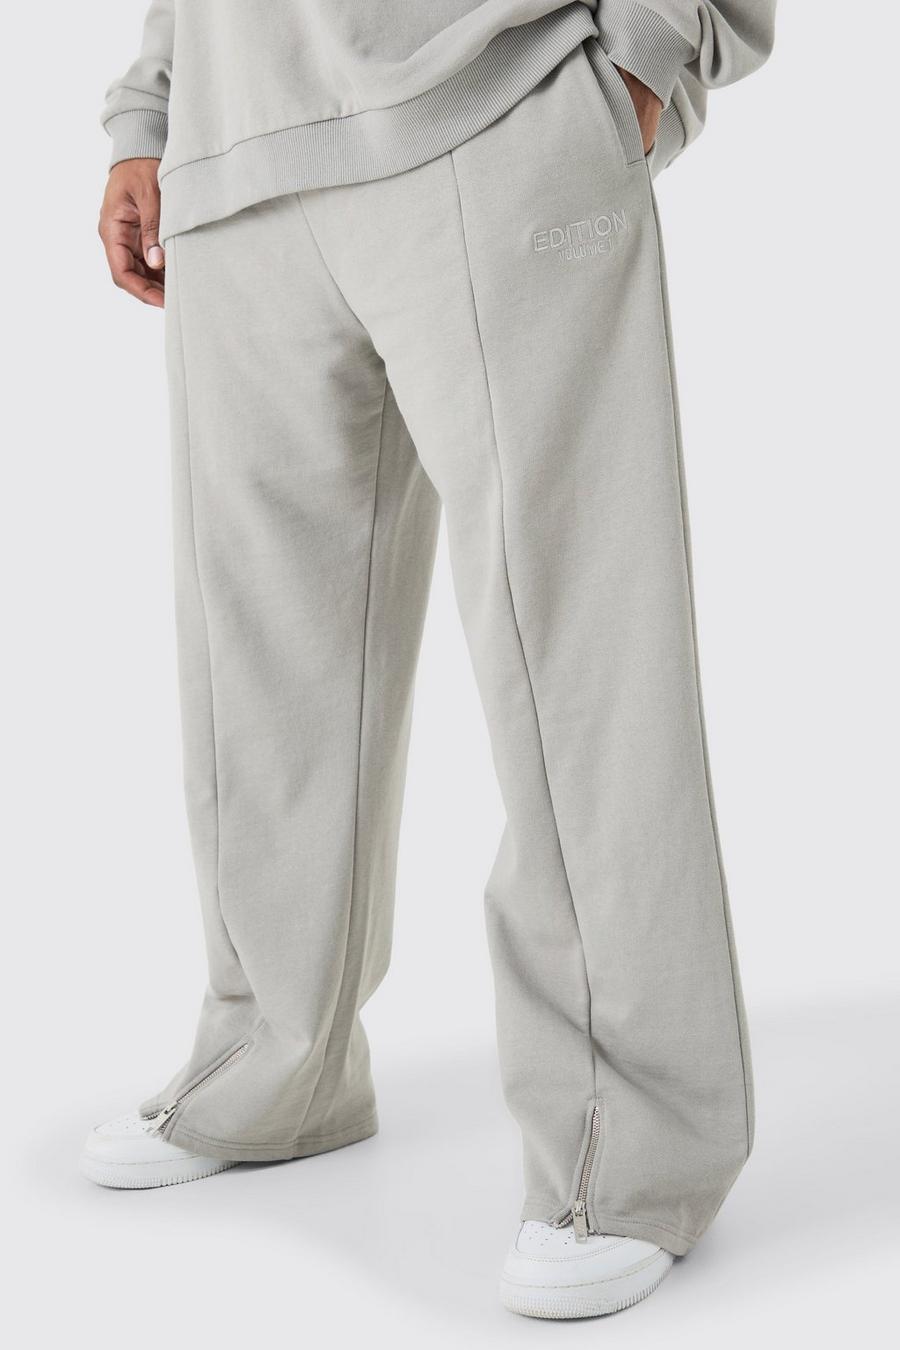 Pantalón deportivo Plus EDITION holgado grueso con abertura en el bajo, Grey